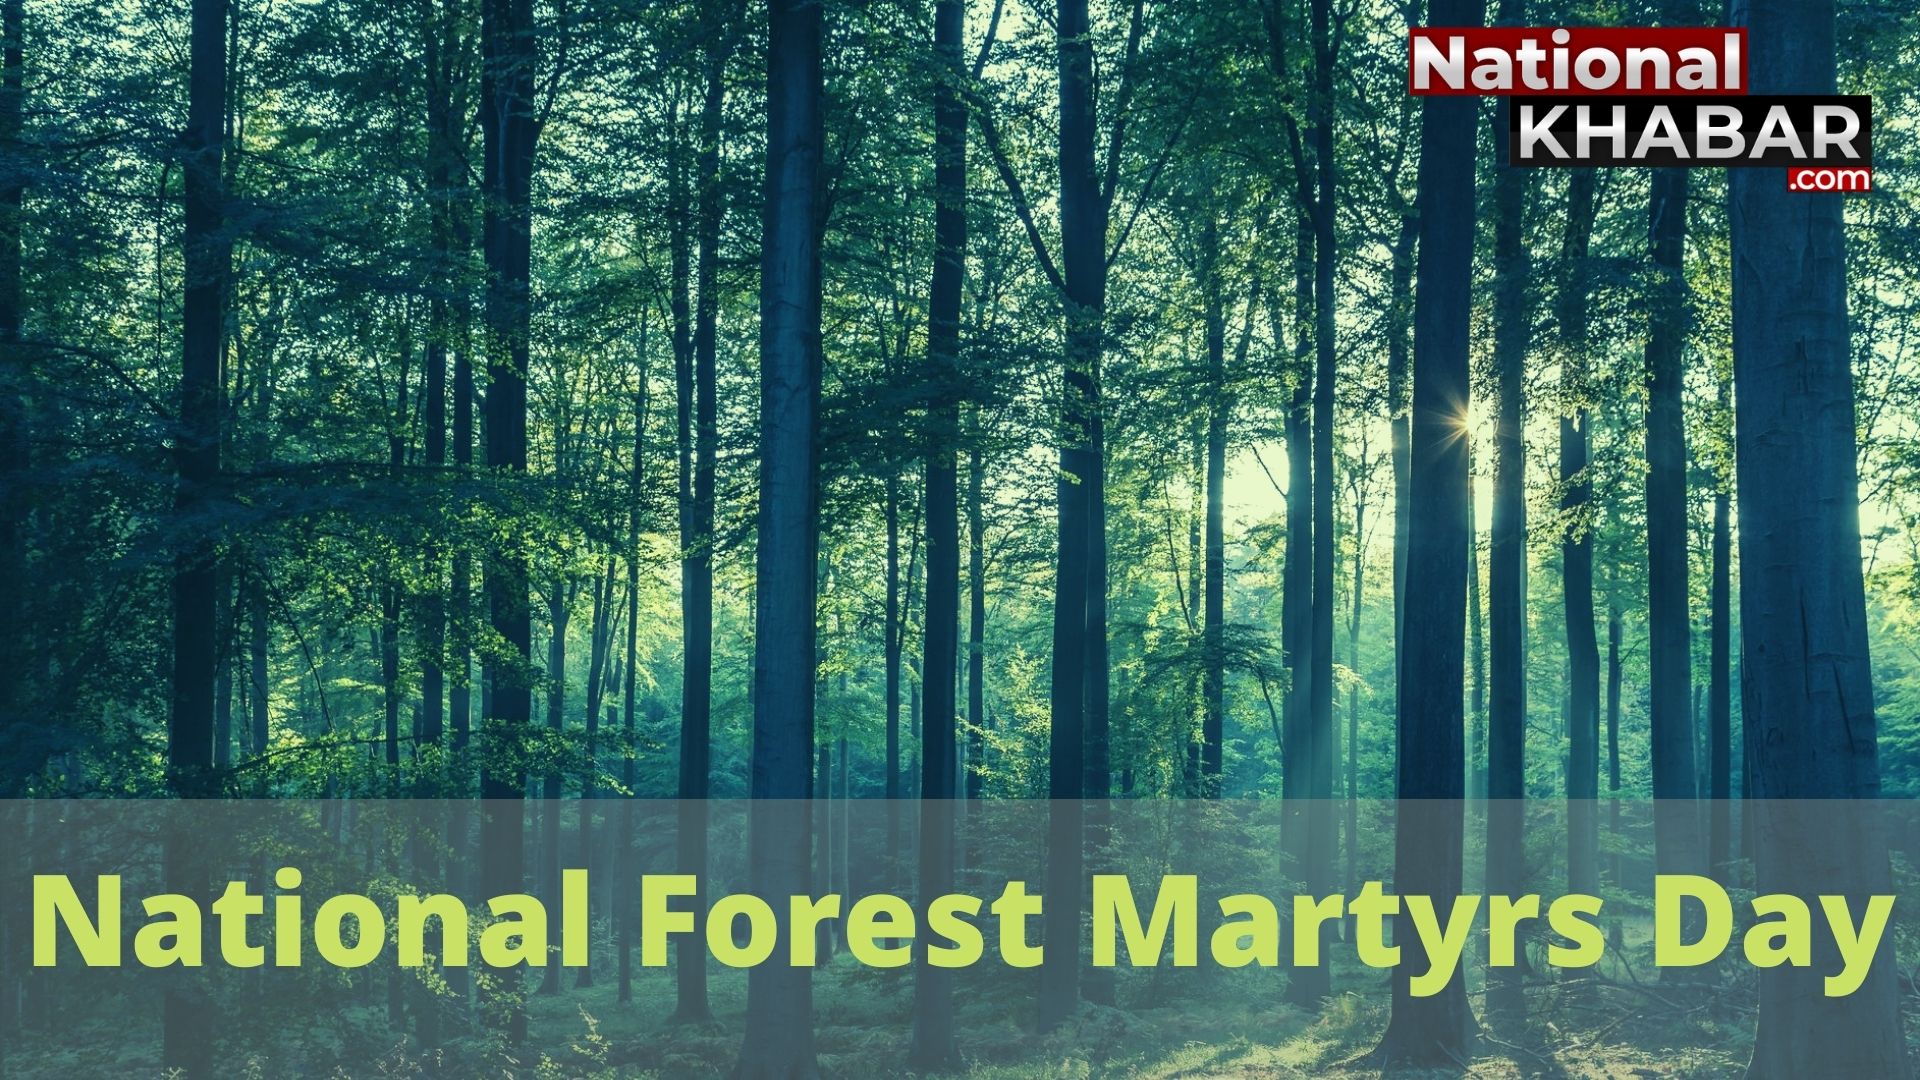 National Forest Martyrs Day: सैनिक से कम नहीं, घरों से दूर जंगलों में बसर करने वाले वनकर्मी, वन और वन्यजीवों के संरक्षण में तैनात हर वनकर्मी को सलाम